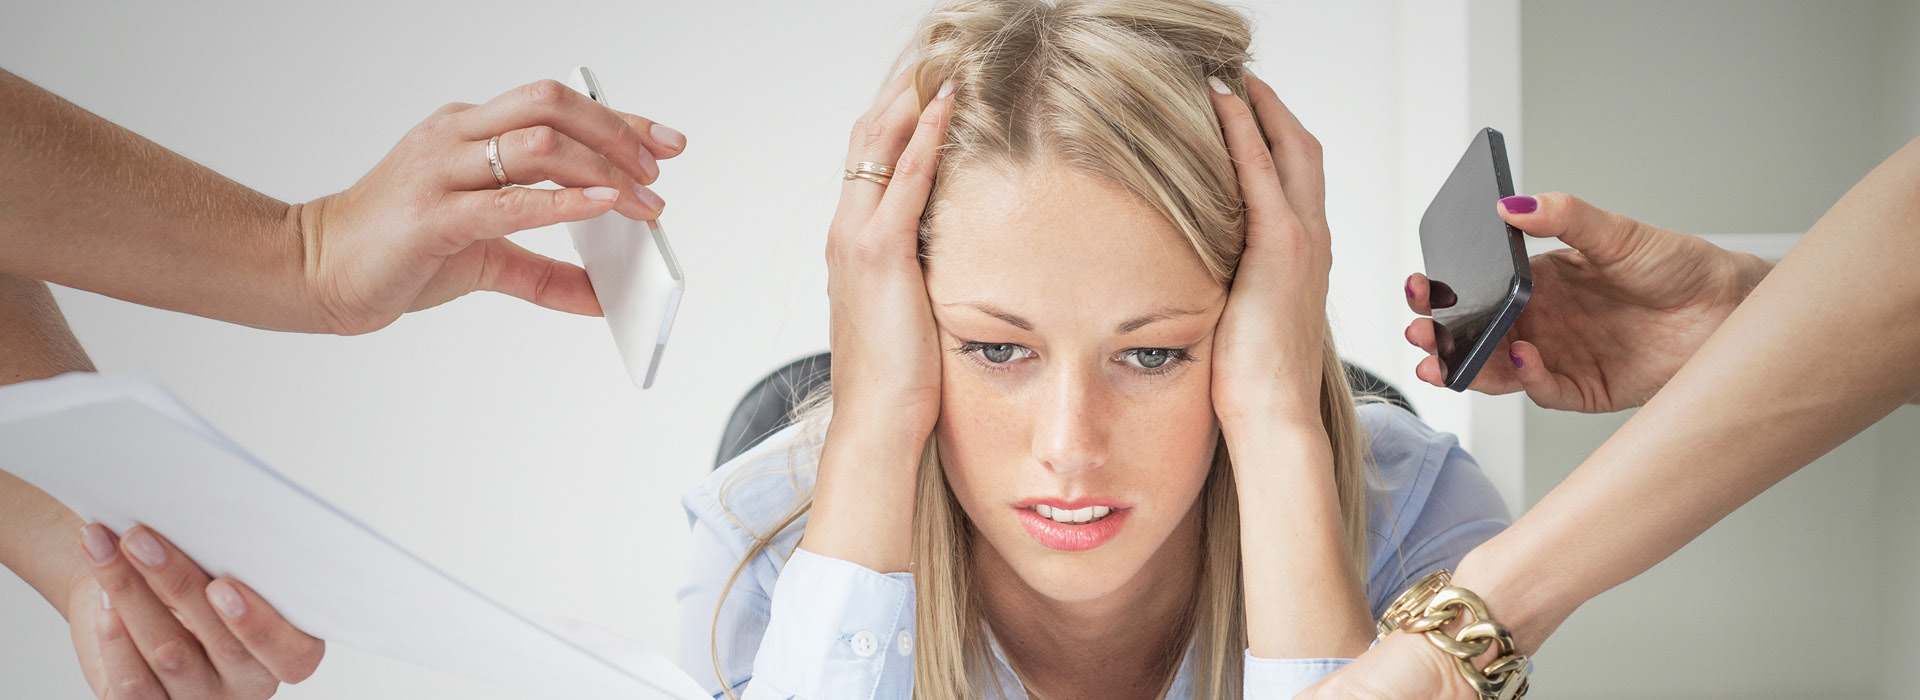 Burnout se tornou doença do trabalho; o que muda?